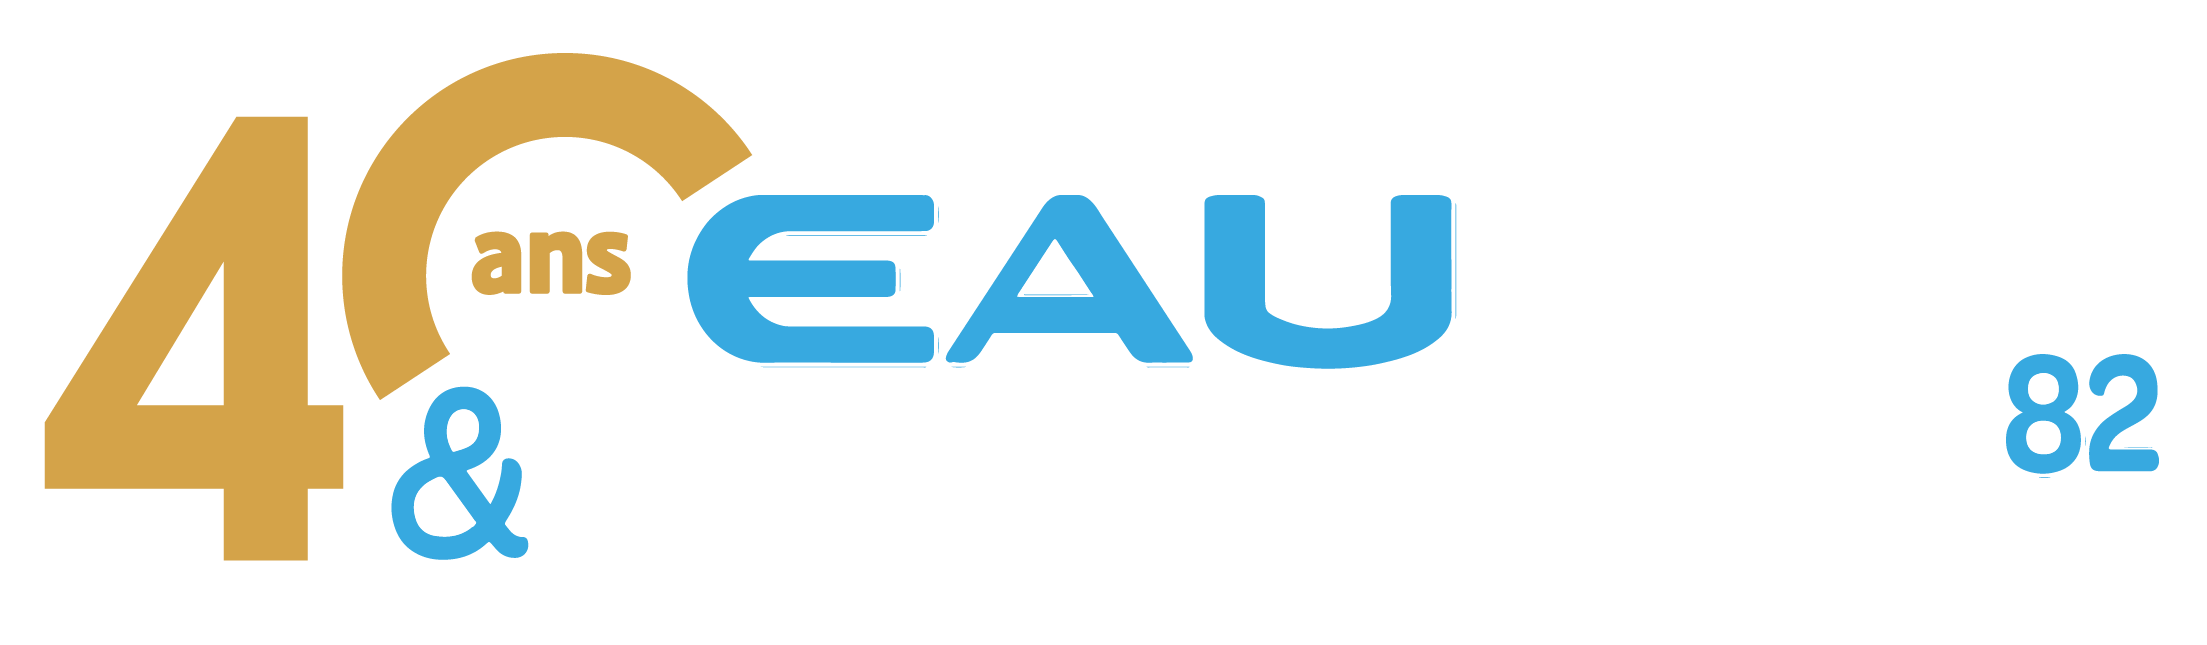 logo Eau et Technique 82 - 40 years